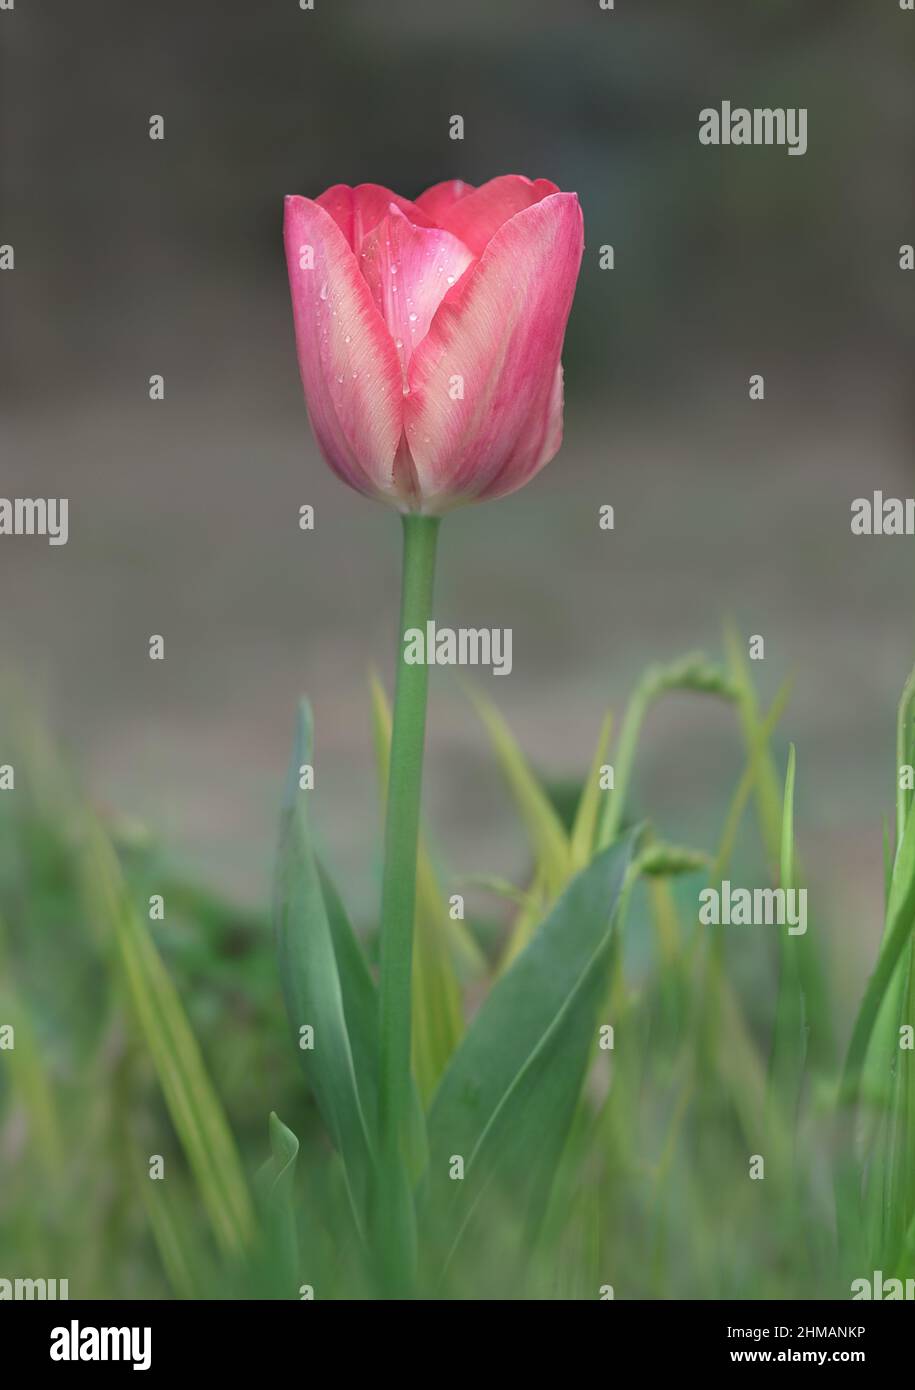 Vertikale Foto von frischen rosa Tulpenblüte mit natürlichen verschwommenem grünen Hintergrund nach Regen. Nahaufnahme einer einzelnen rosa Tulpenblume auf grünen Blättern. Stockfoto